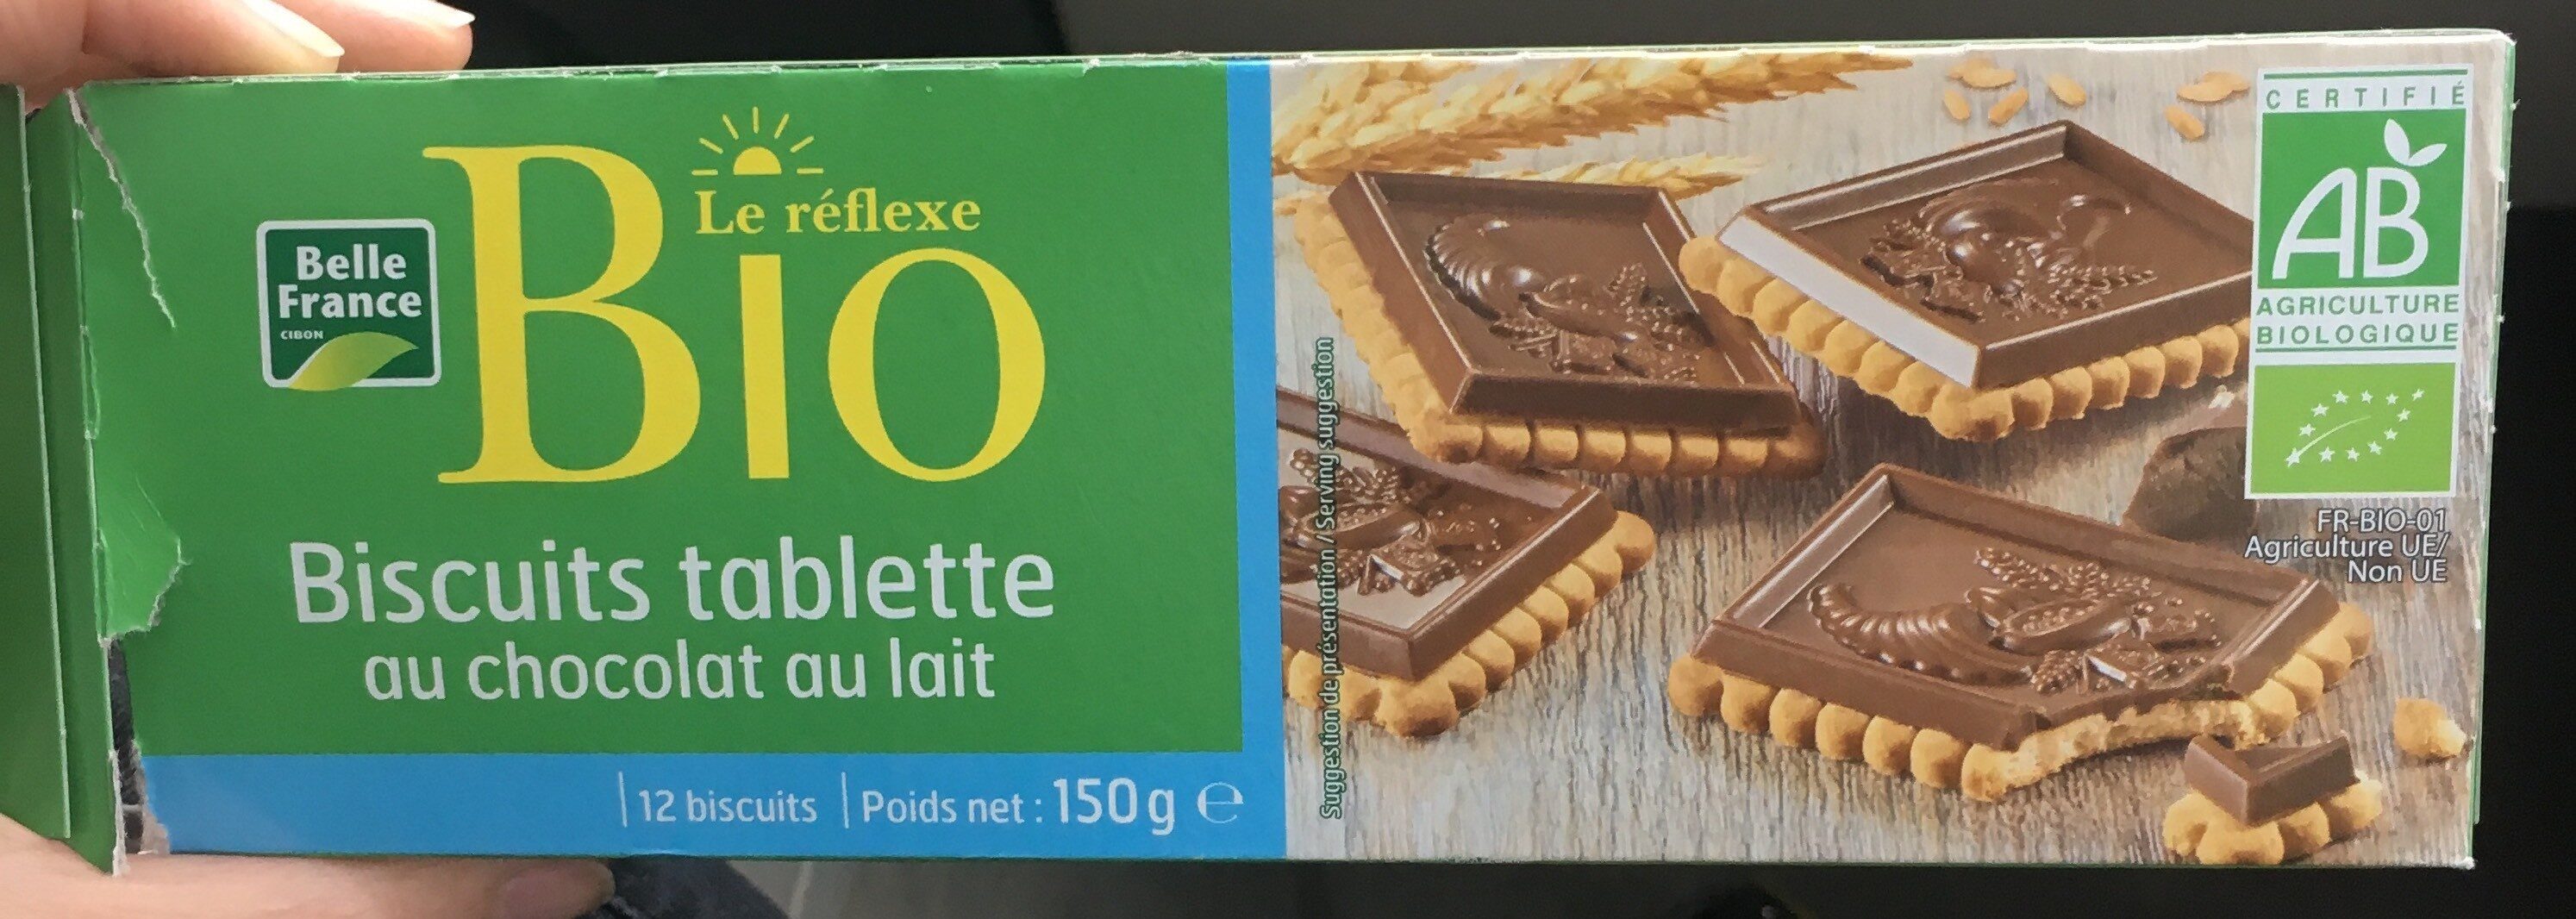 Boscuits tablette au chocolat au lait - Produit